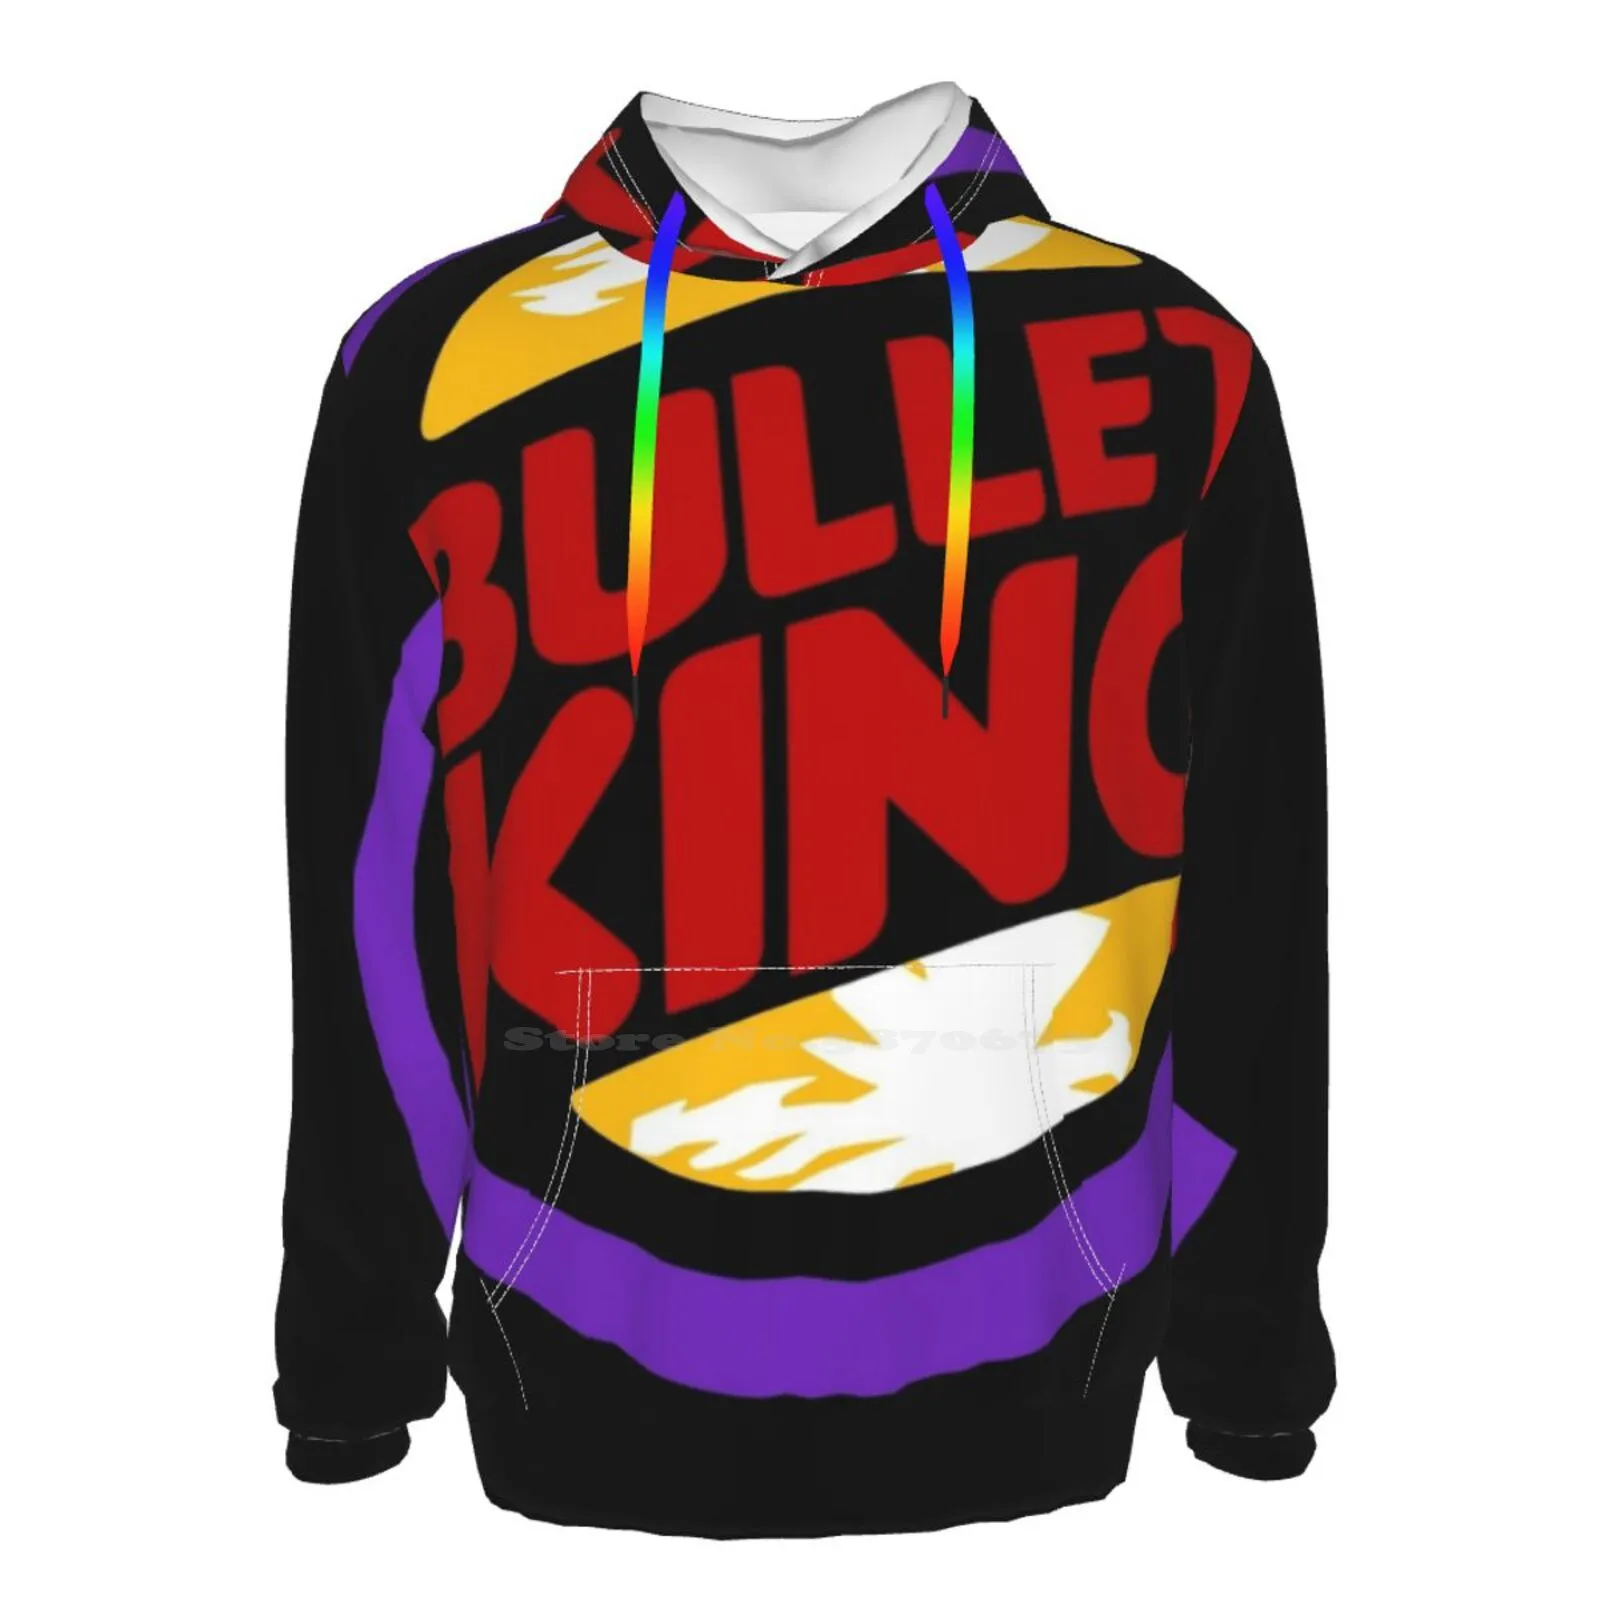 Bullet Kuningas - Loot Seda Teed 3D Cartoon Hupparit Õhuke Hip-Hop Vabaaja Unisex Tops Bullet Kuningas Bullet Kuningas Rajoon Rajoon